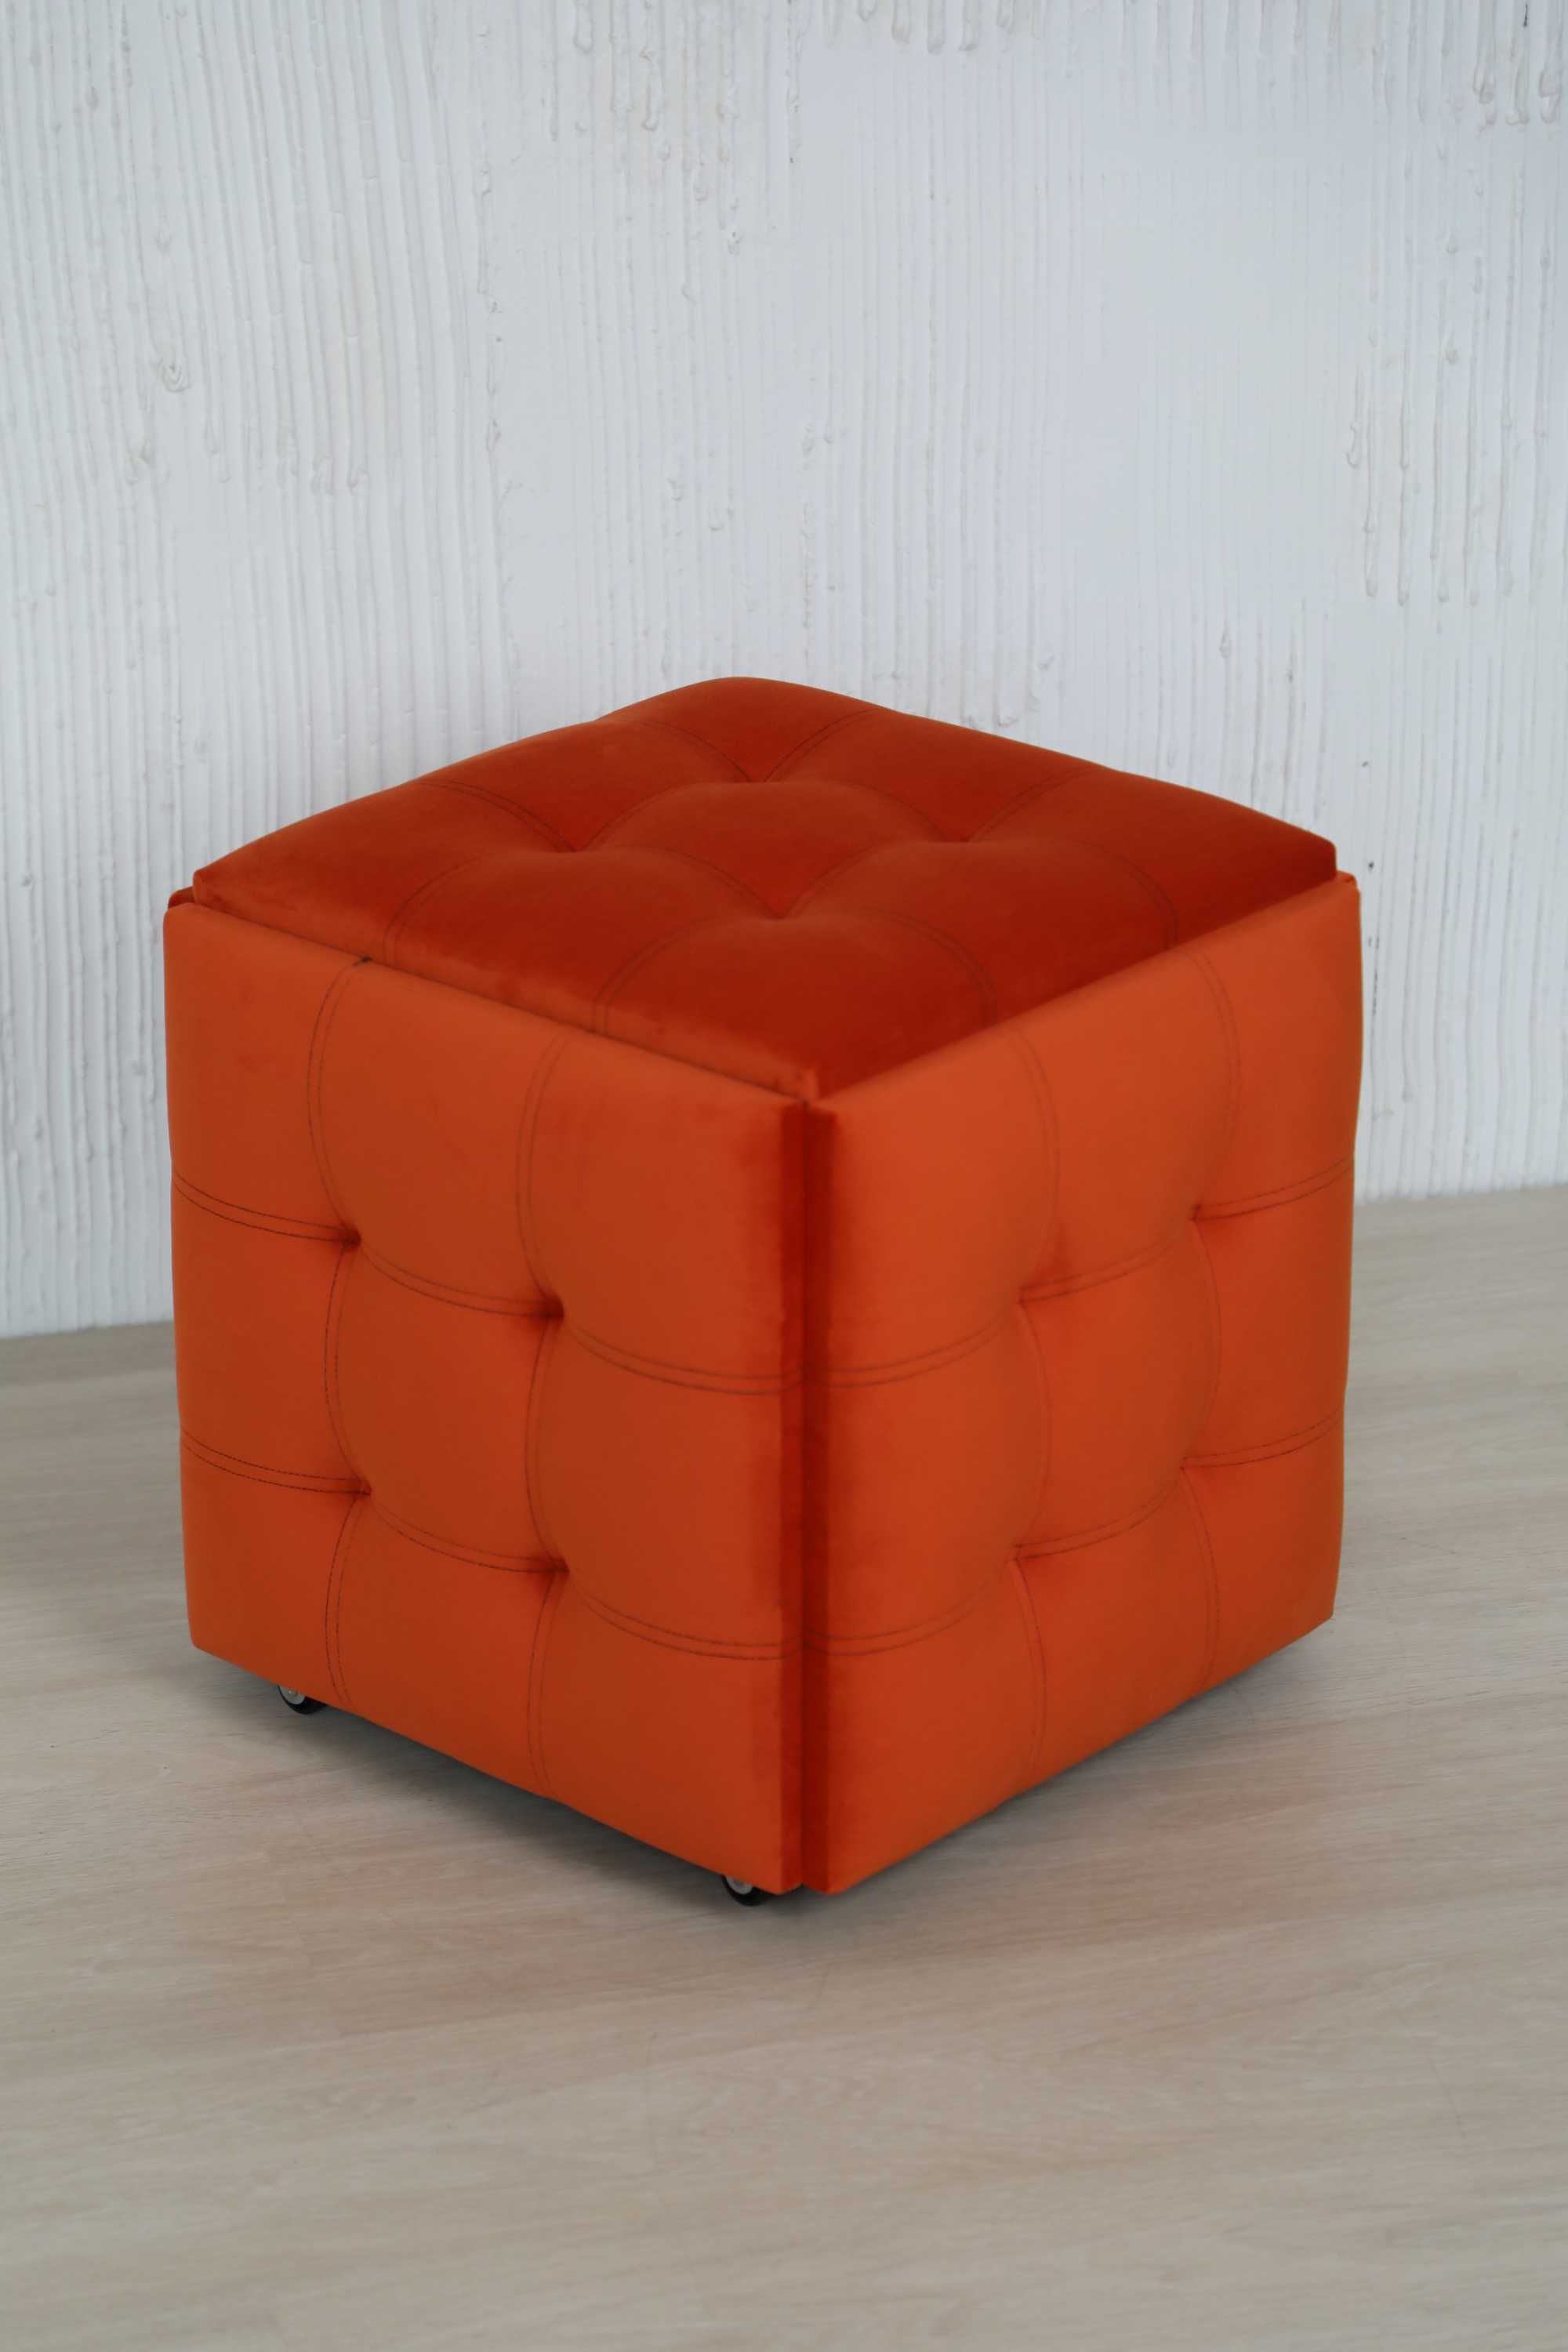 Пуфик-трансформер 5 в 1. Оранжевий пуф. Стіл, столик, крісло, стульчик